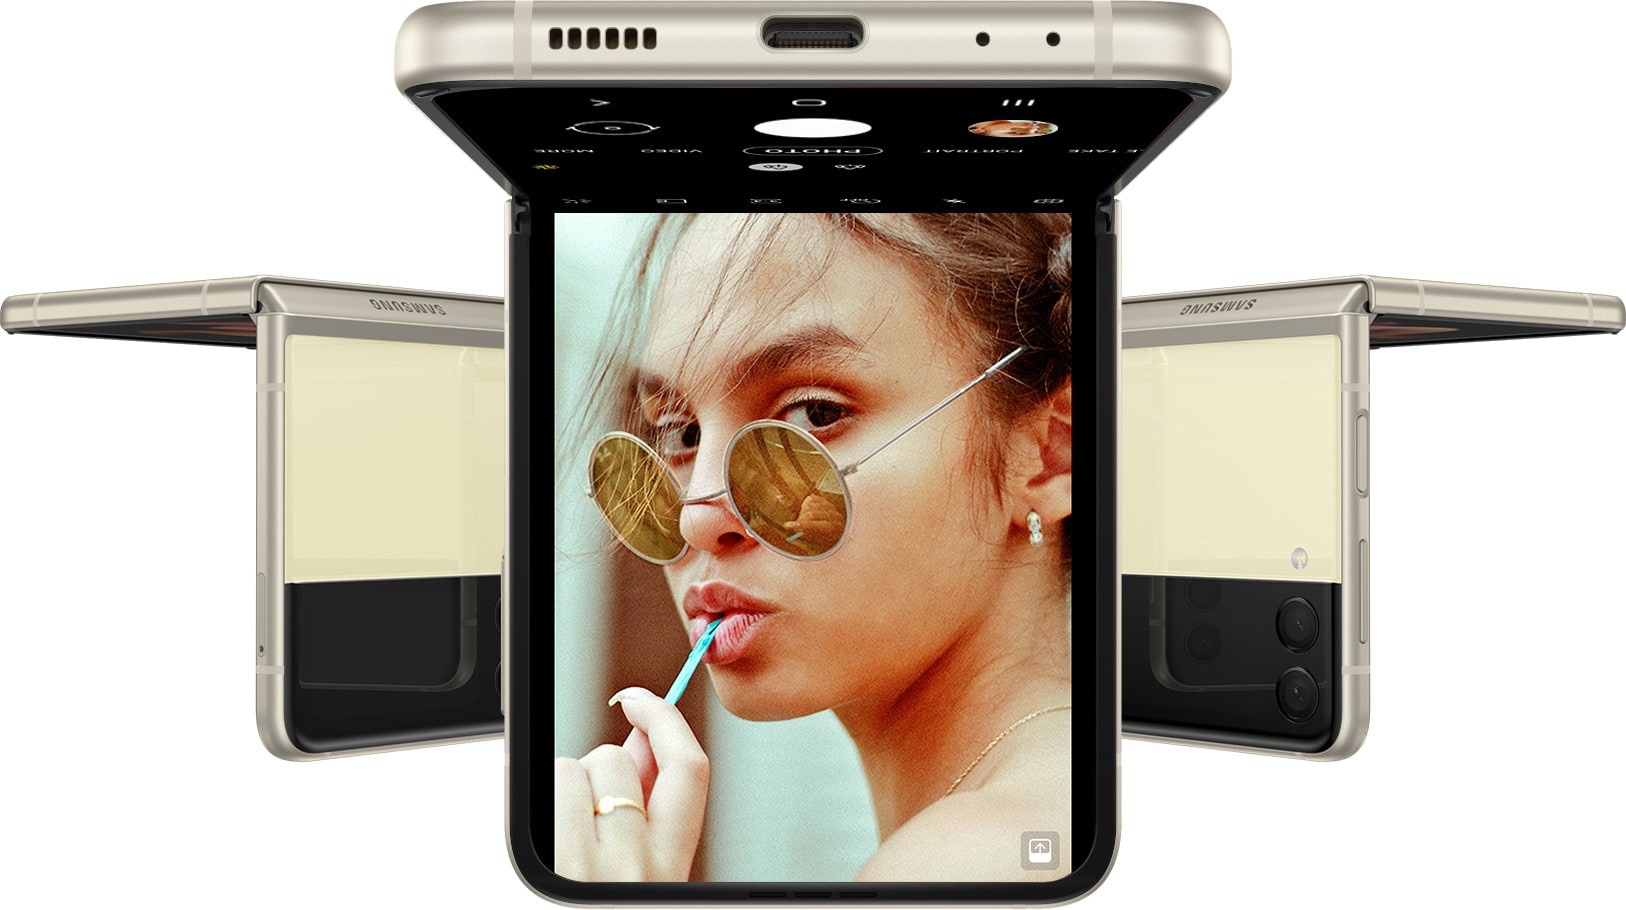 Drei Galaxy Z Flip3 5G Smartphones im Flex-Modus und auf dem Kopf stehend. Auf dem nach vorne gerichteten Smartphone ist die Kamera-App auf dem Hauptdisplay zu sehen und eine Frau, die in die Kamera blickt.